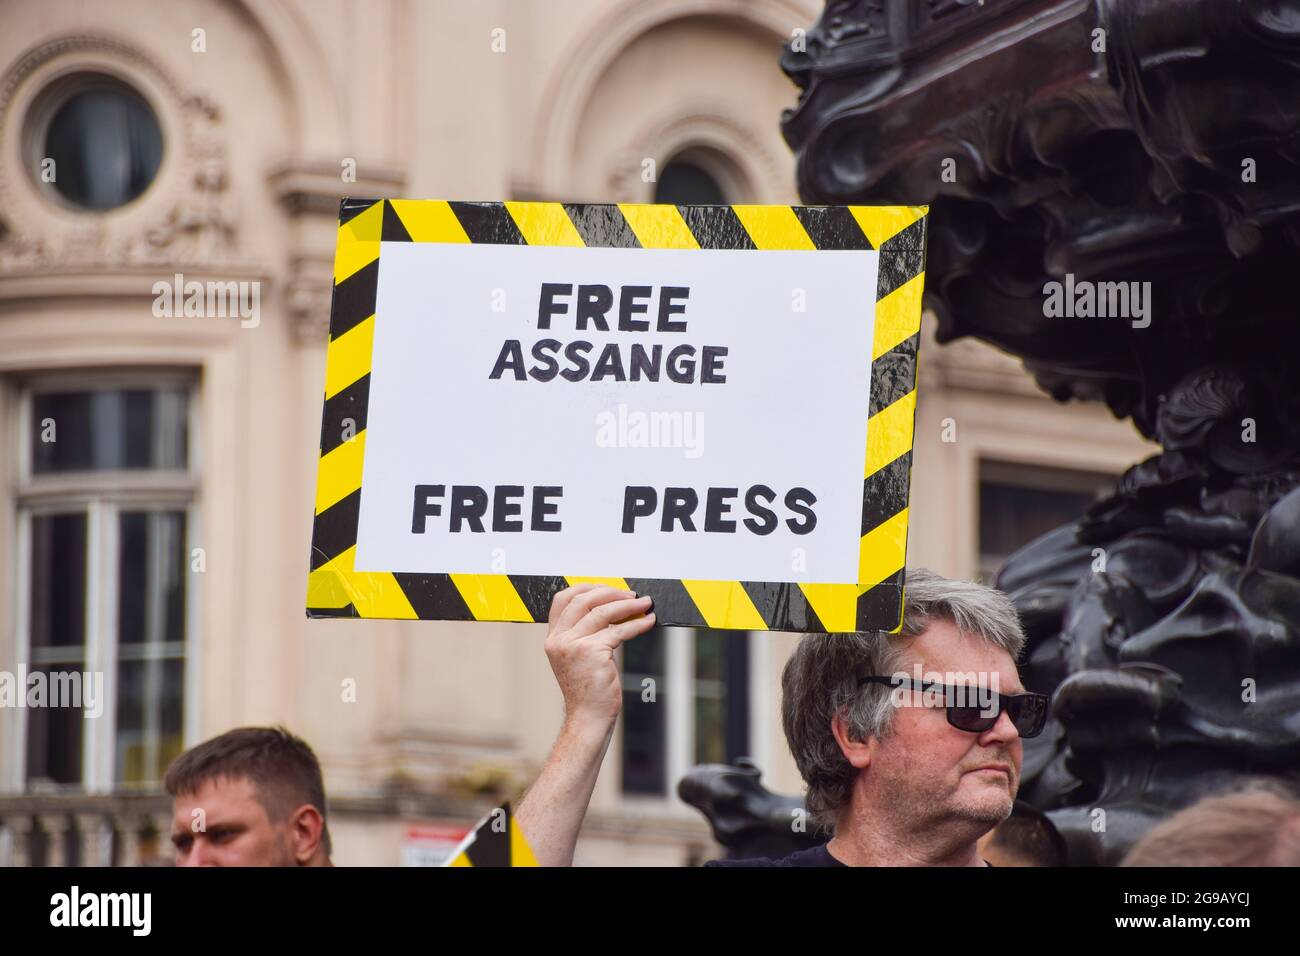 Ein Protestler hält während der Pro-Julian Assange Demonstration ein Plakat mit dem Titel "Free Assange, Free Press".Demonstranten versammelten sich am Piccadilly Circus und forderten die Freilassung des WikiLeaks-Gründers. (Foto von Vuk Valcic / SOPA Images/Sipa USA) Stockfoto